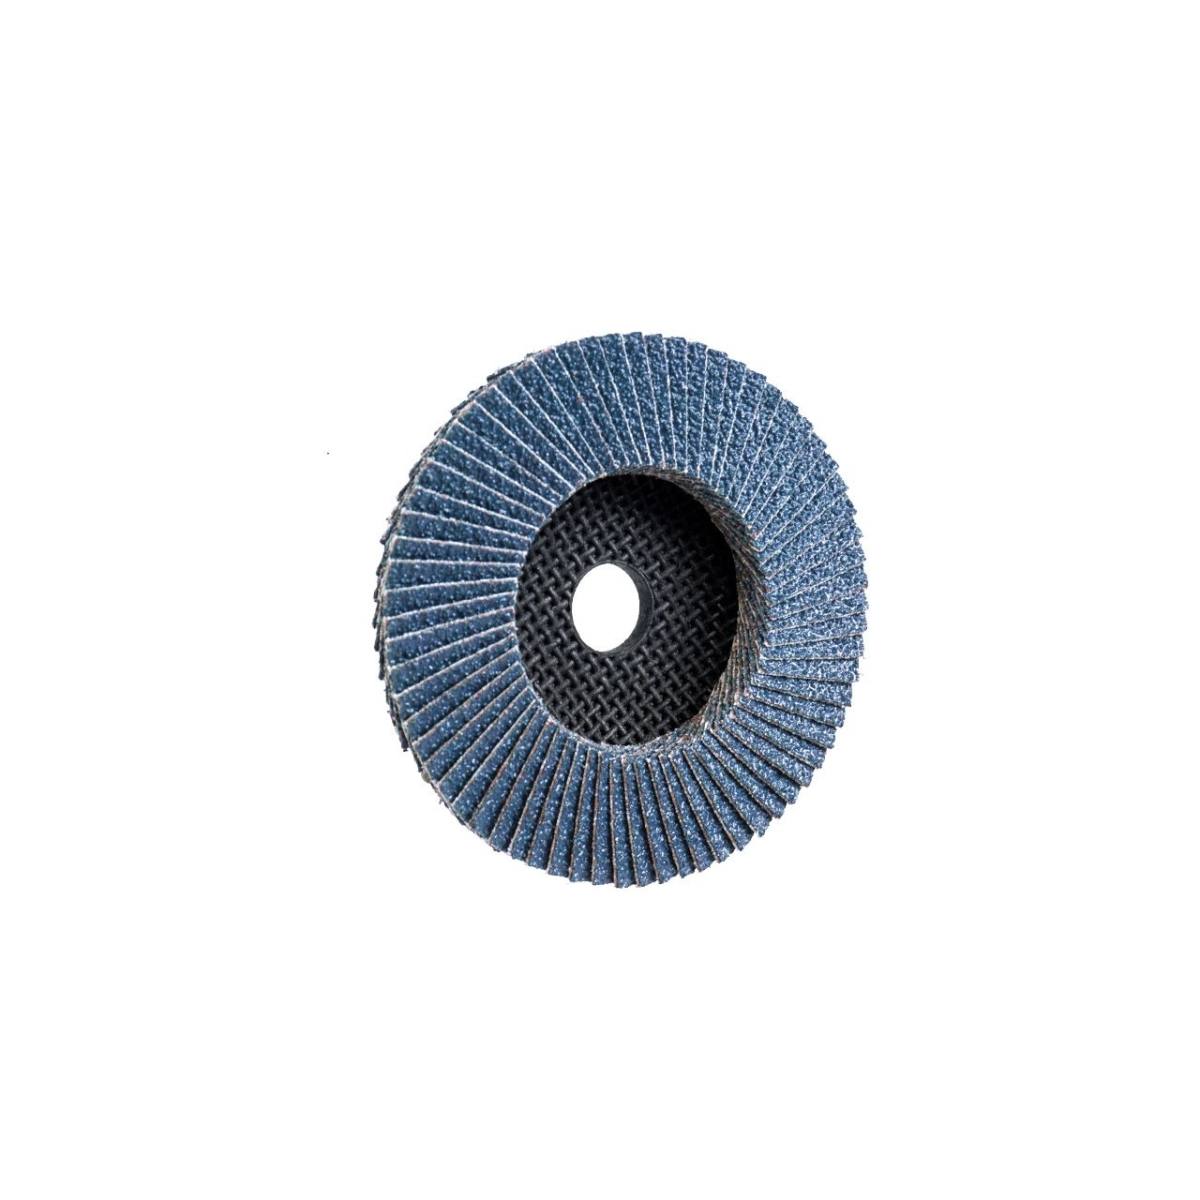 TRIMFIX ZIRCOPUR, 100 mm x 15.2 mm, grit 80, flap disc